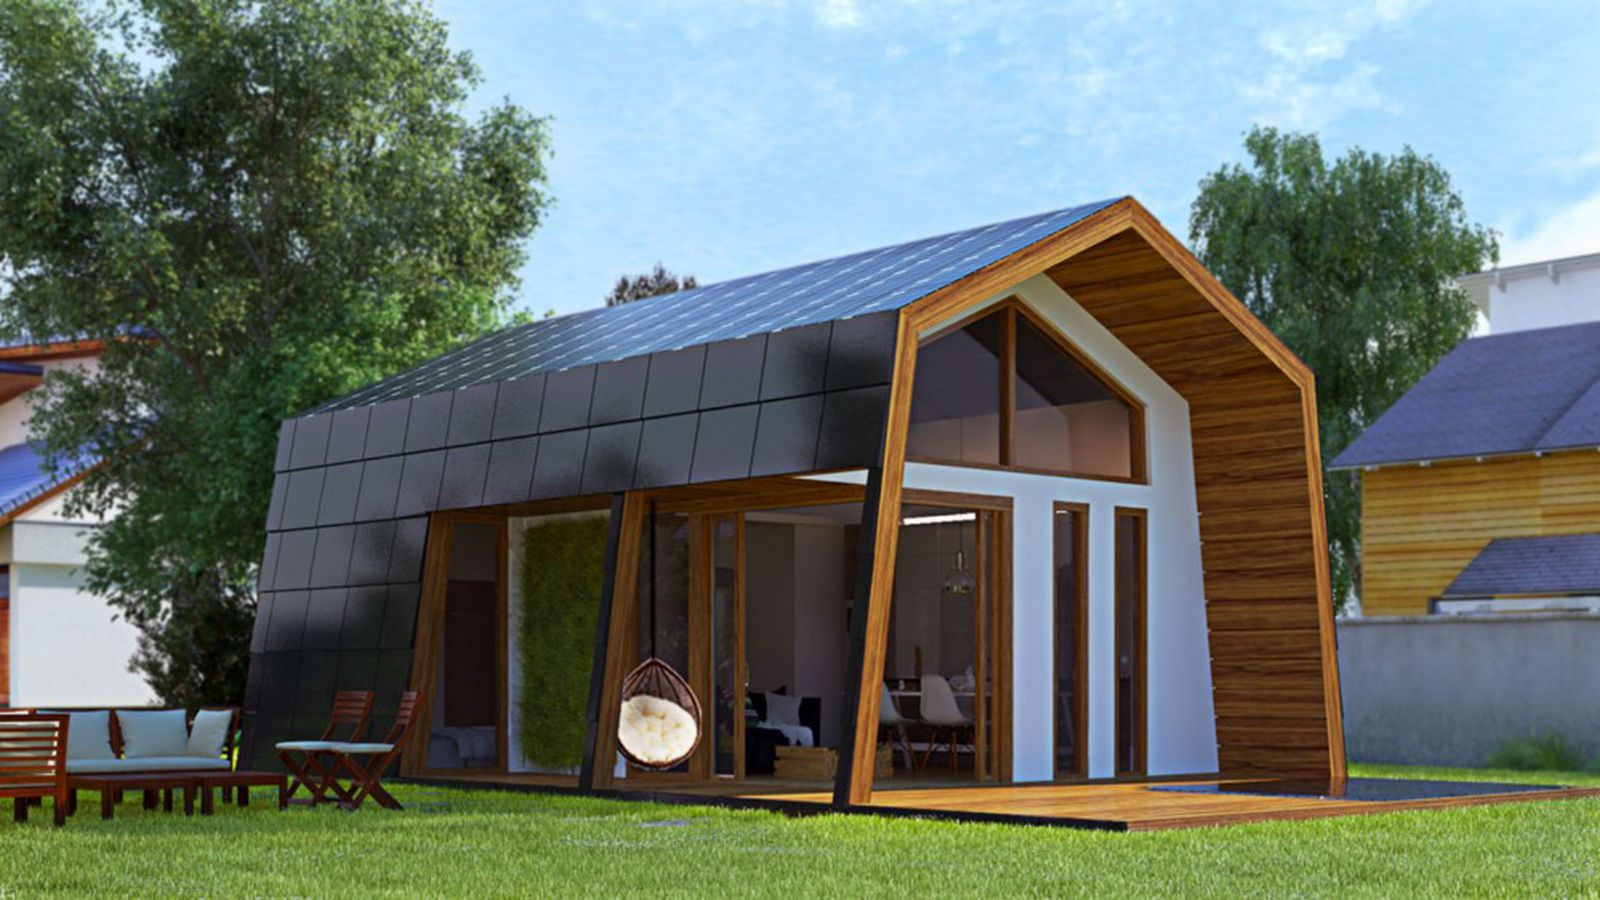 Casa pré-fabricada com eficiência energética pode ser construída por 2 pessoas